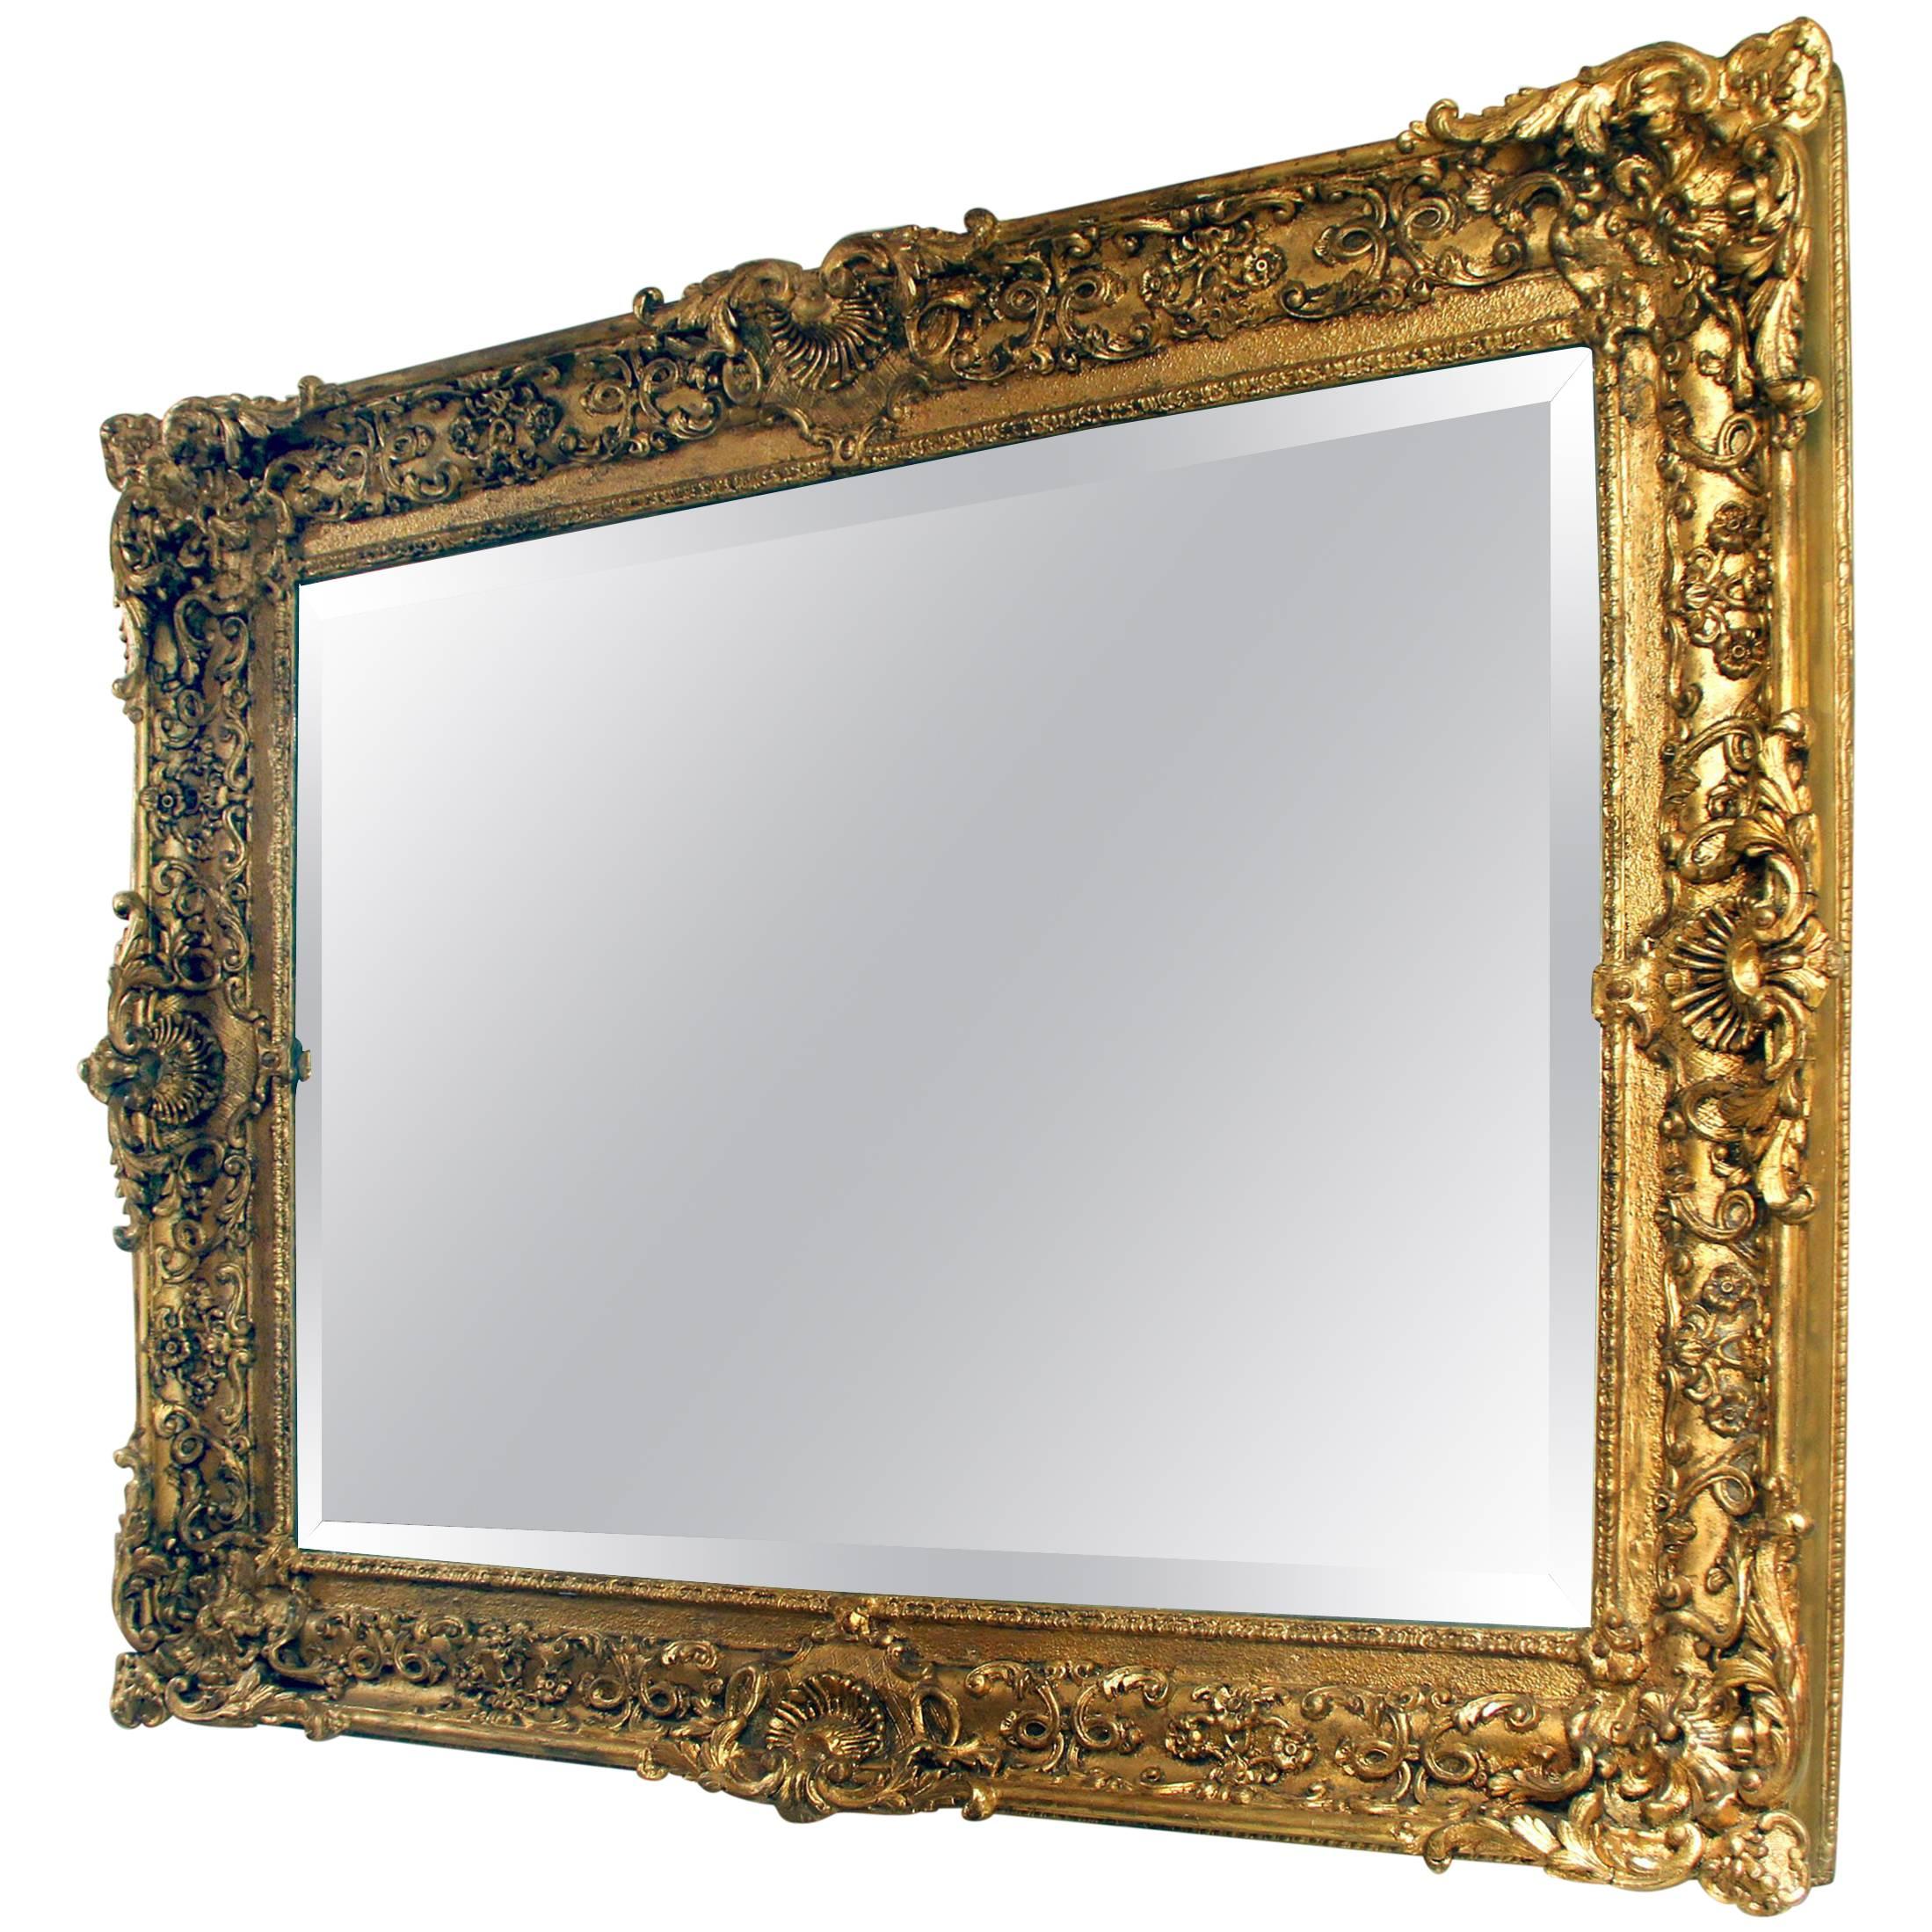 Grand et fantastique miroir biseauté en bois doré sculpté de la fin du XIXe siècle